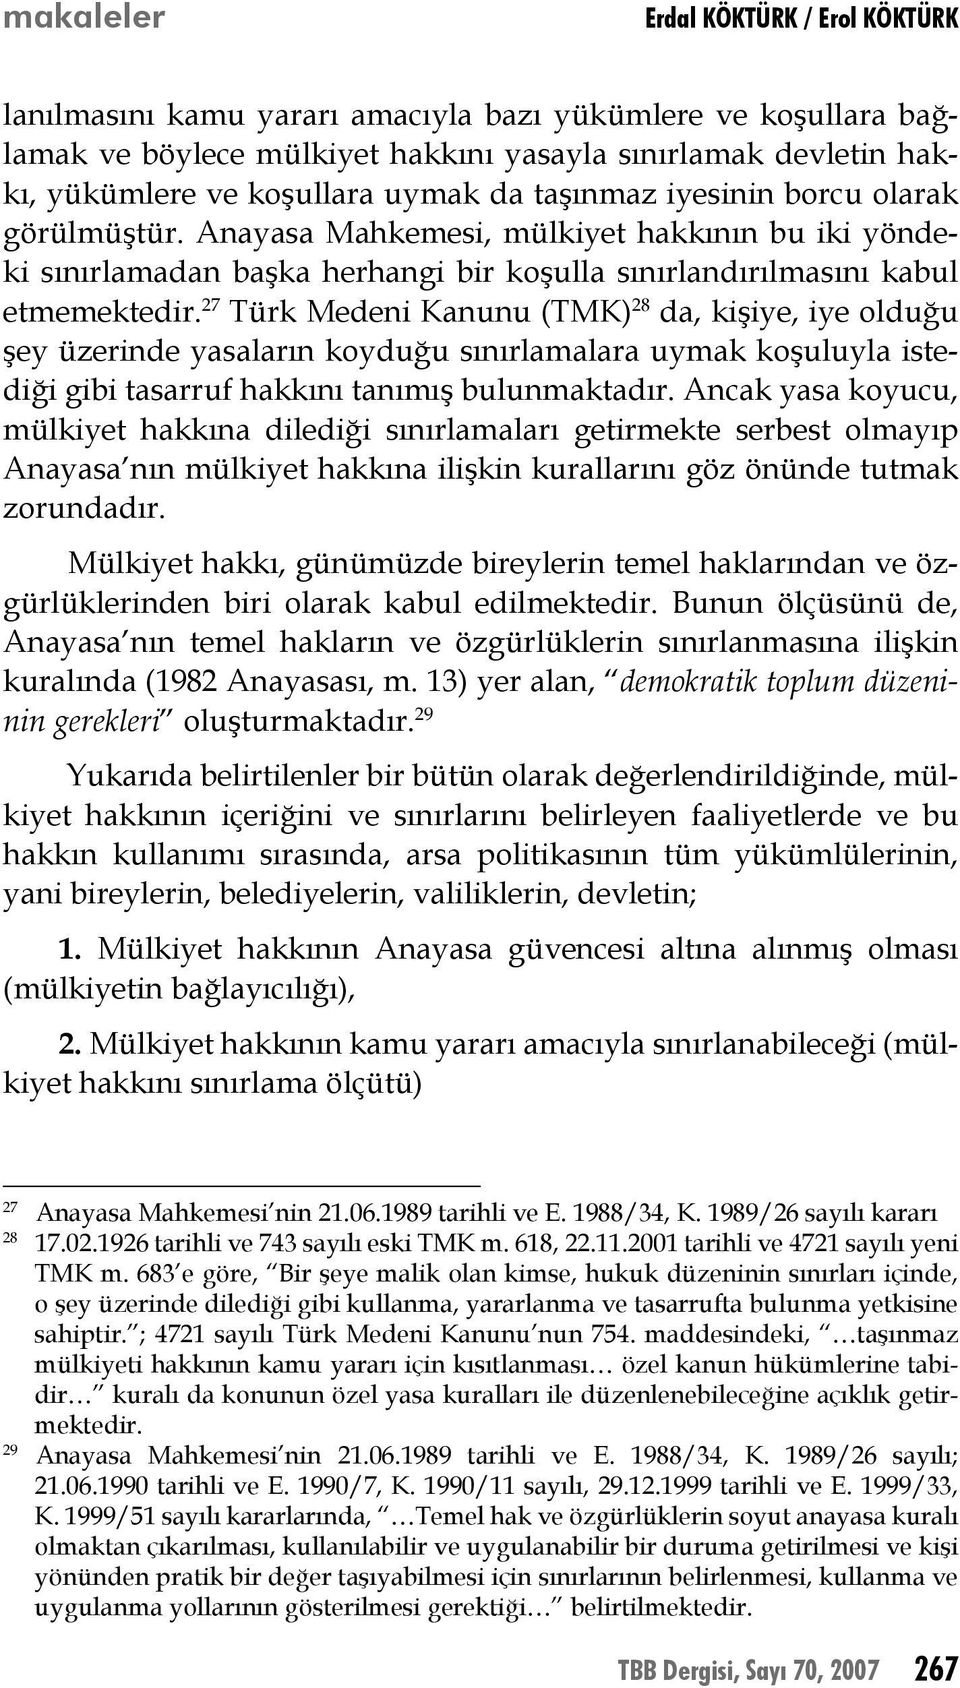 27 Türk Medeni Kanunu (TMK) 28 da, kişiye, iye olduğu şey üzerinde yasaların koyduğu sınırlamalara uymak koşuluyla istediği gibi tasarruf hakkını tanımış bulunmaktadır.